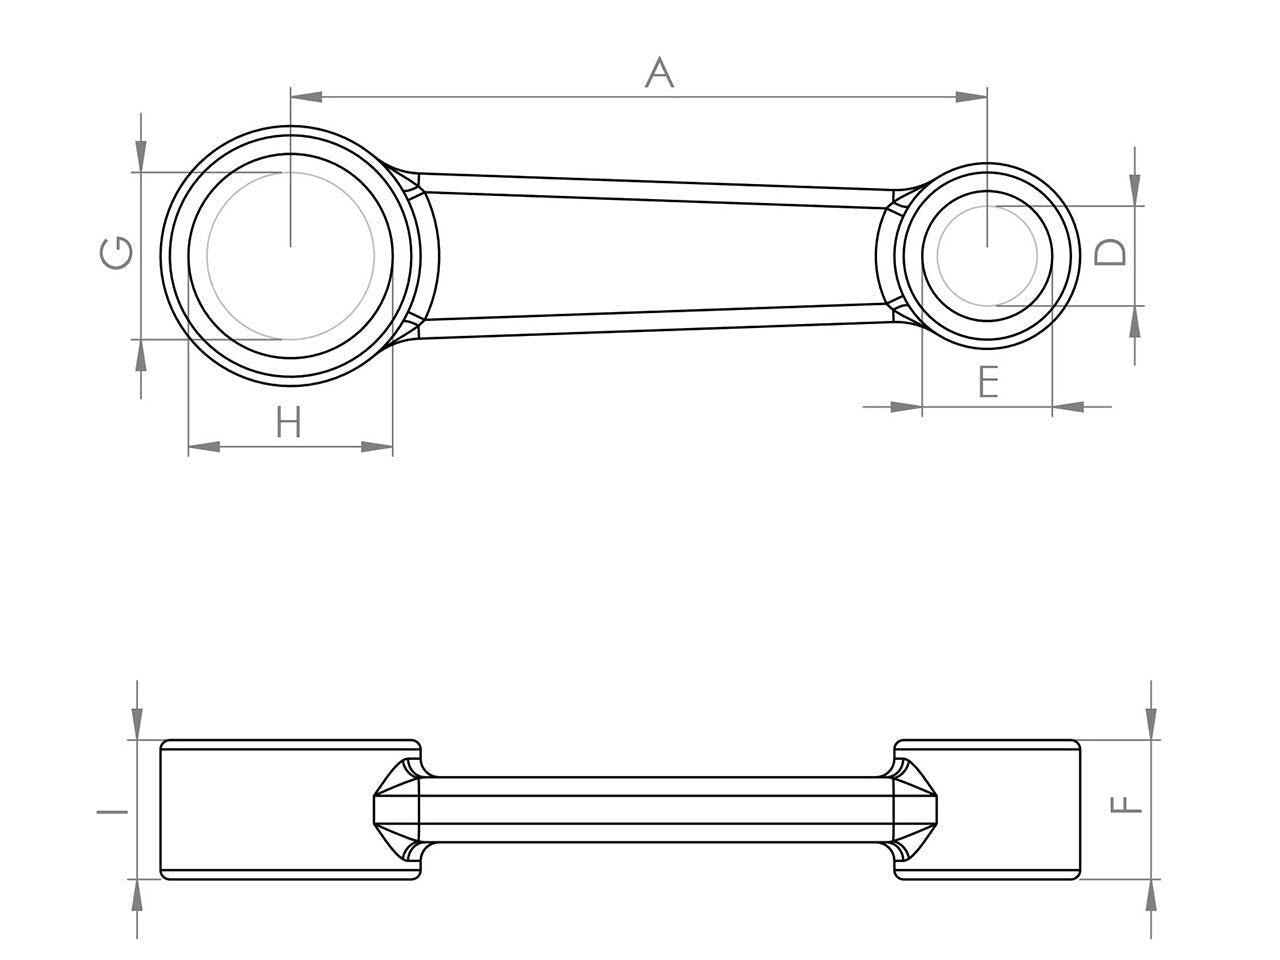 Zeichnung Barikit Pleuel für einen Honda Scoopy 150 Motor mit Bemaßung.